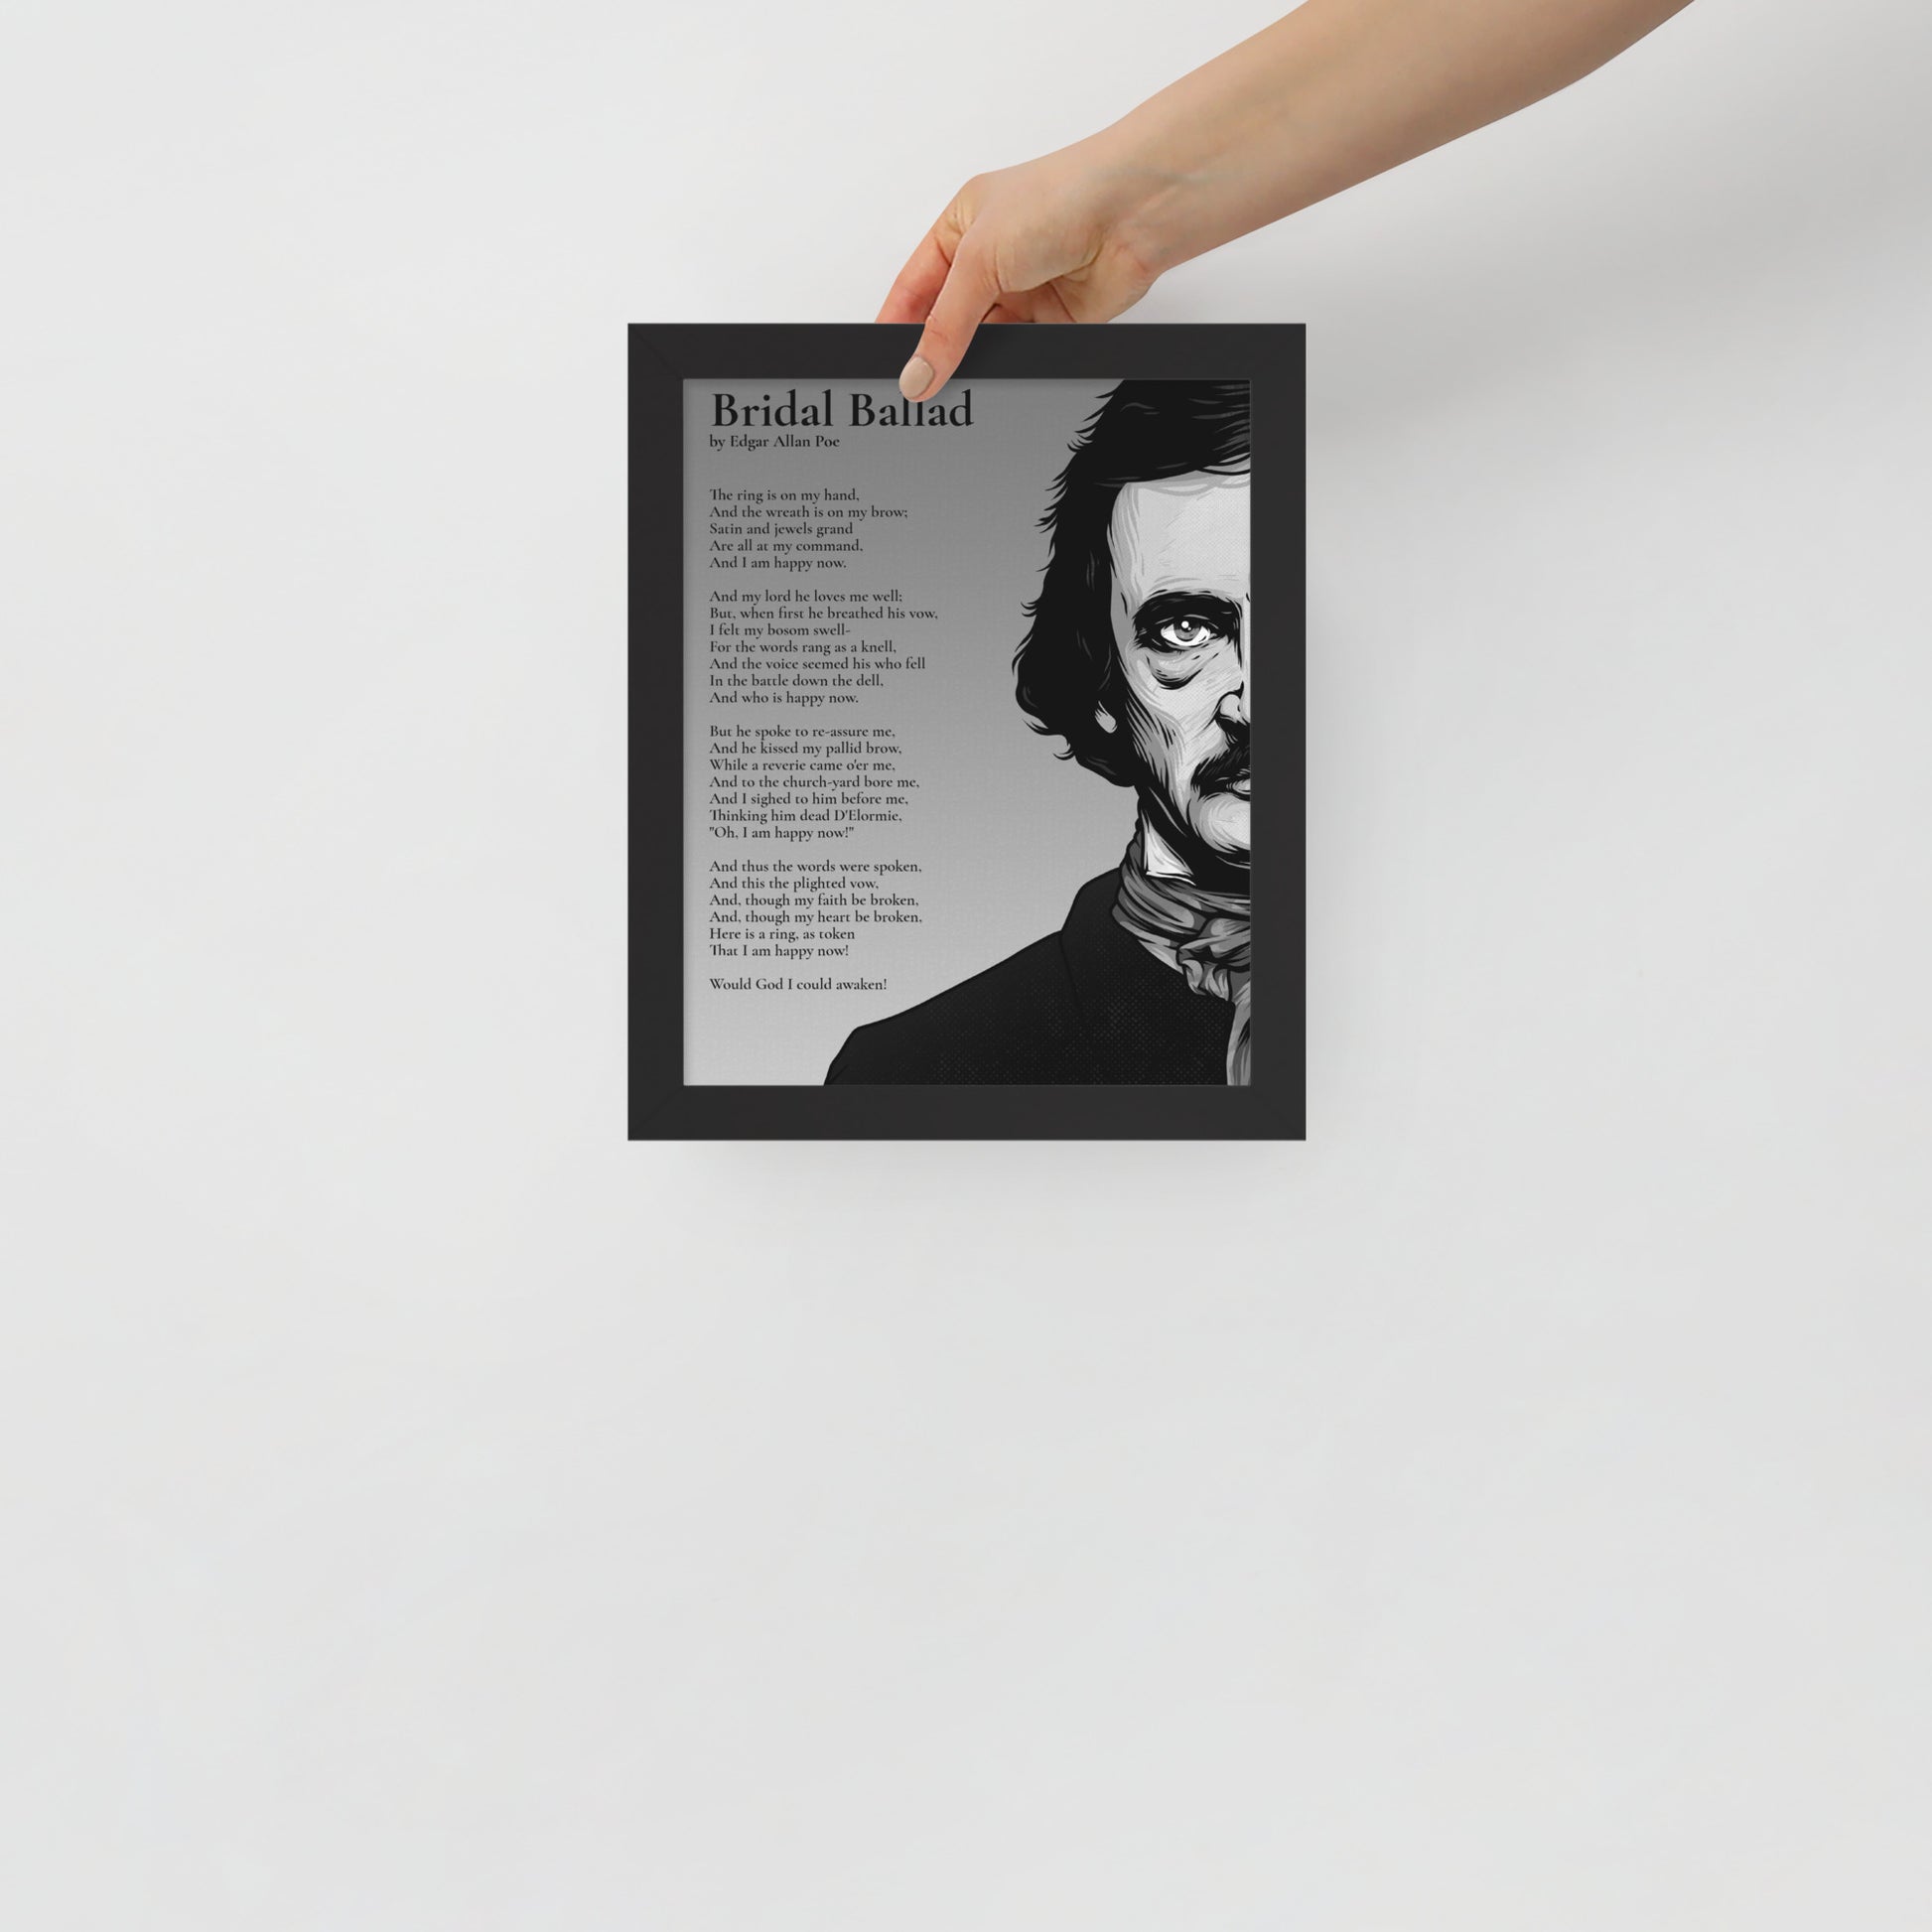 Edgar Allan Poe's 'Beloved Physician' Framed Matted Poster - 8 x 10 Black Frame